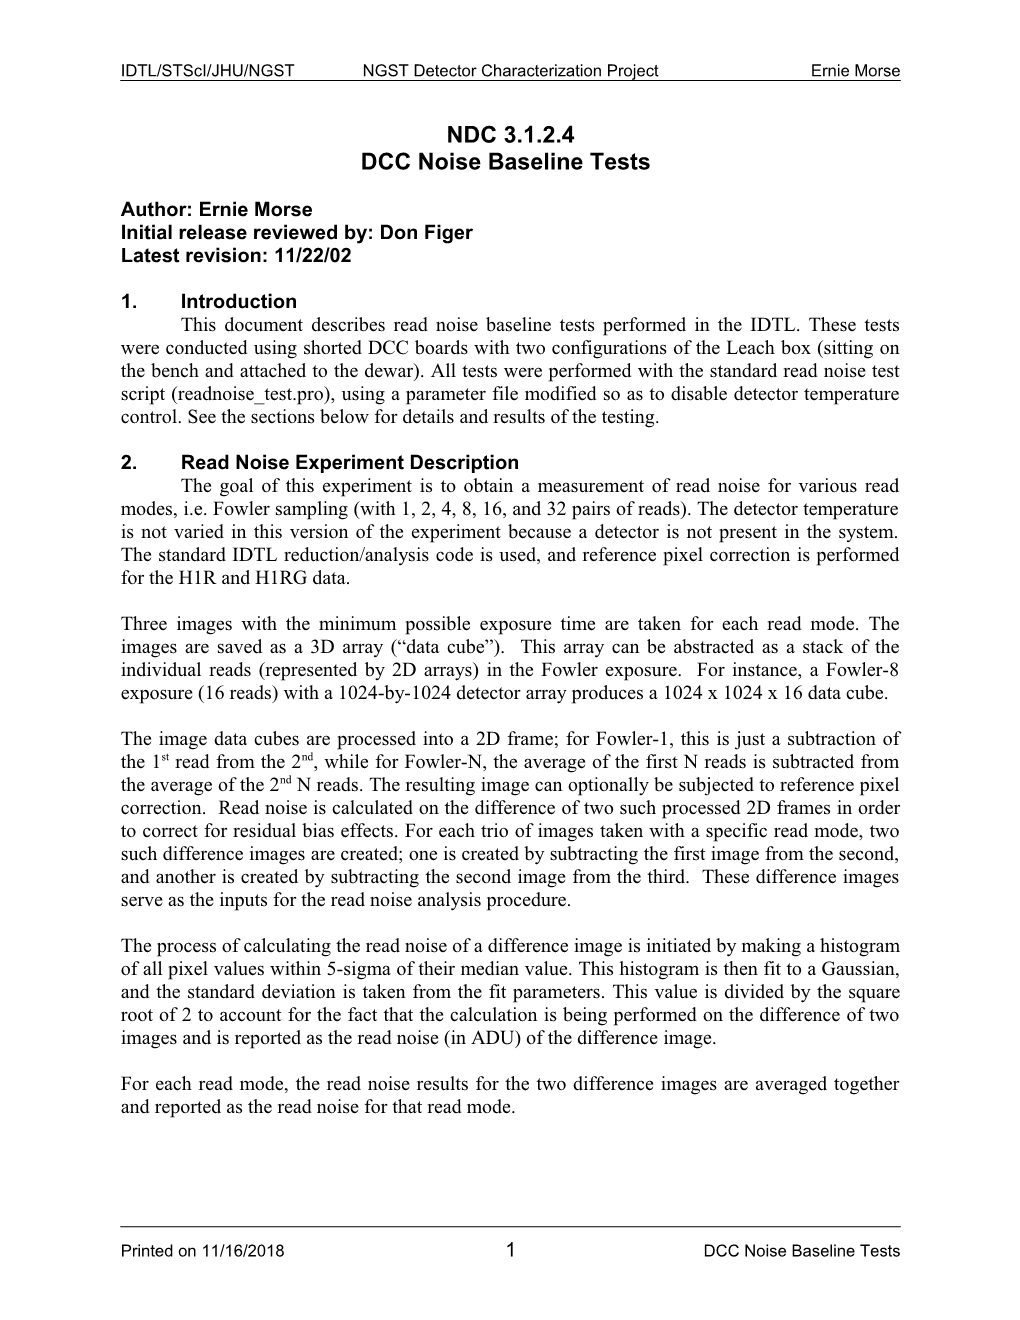 DCC Noise Baseline Tests